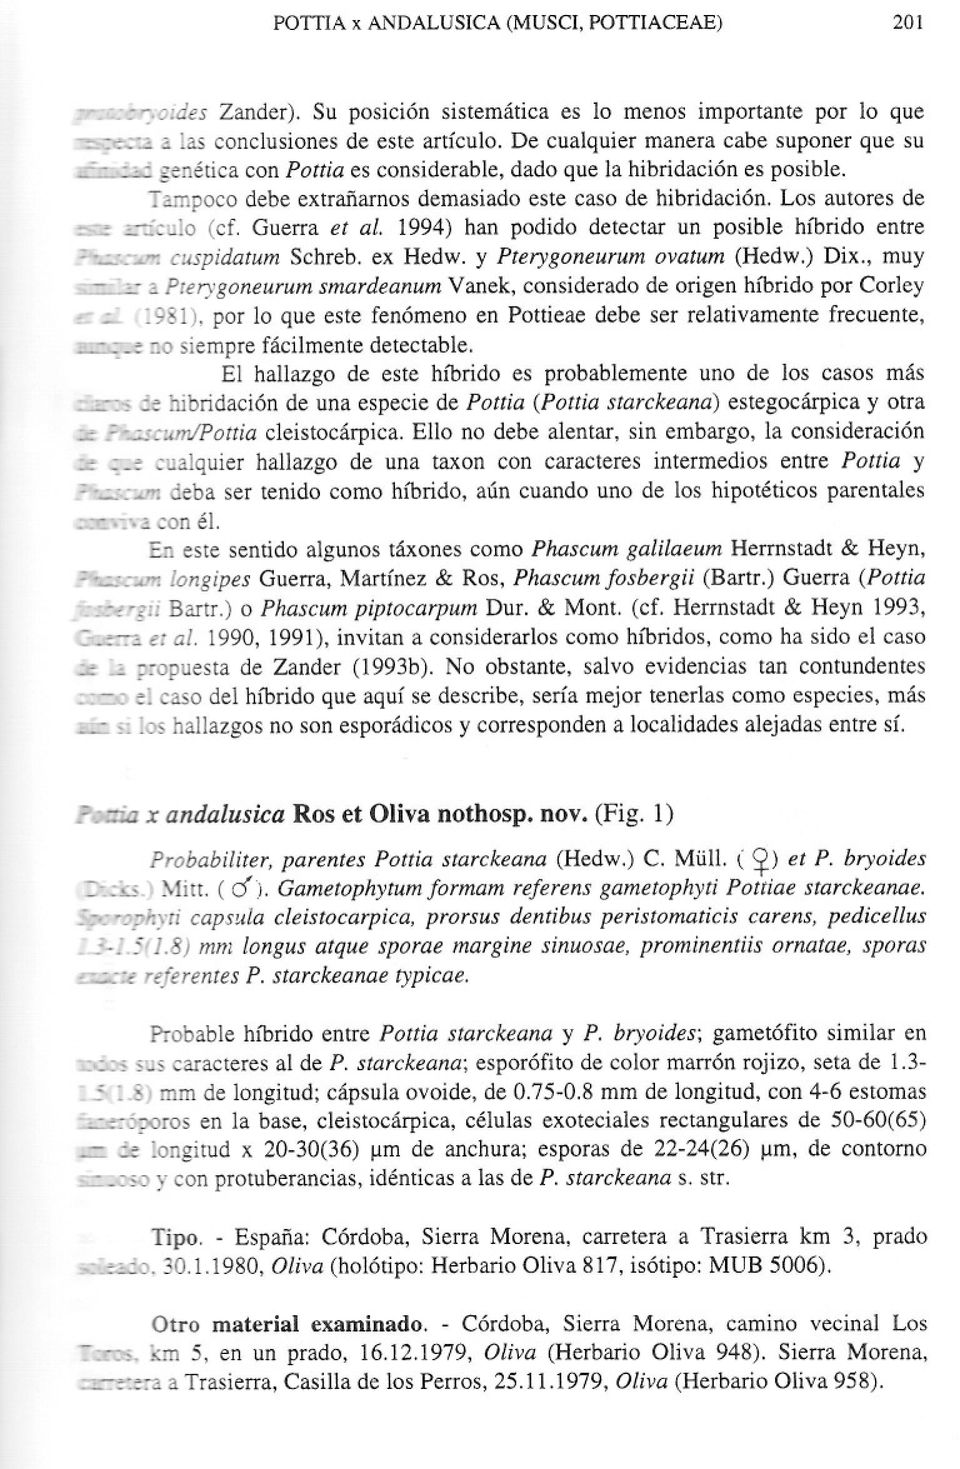 Los autores de -=-':culo (cf. Guerra et al. 1994) han podido detectar un posible híbrido entre C:C~-T~-:cr.cuspidatum Schreb. ex Hedw. y Pterygoneurum ovatum (Hedw.) Dix., muy ~::.